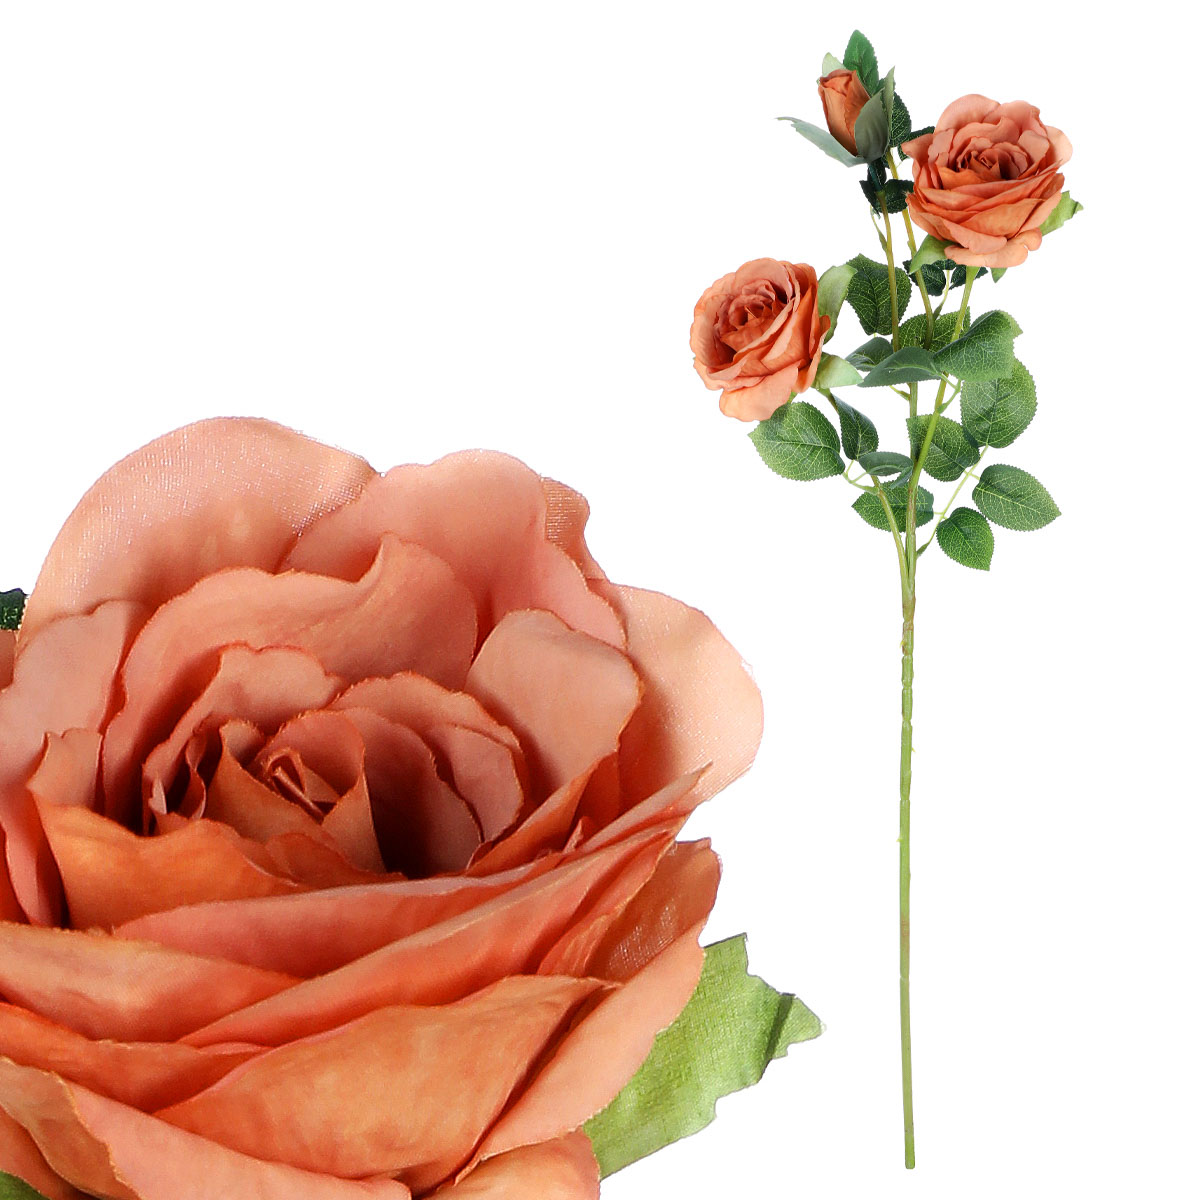 Růže, dva květy s poupětem, barva meruňková Květina umělá.